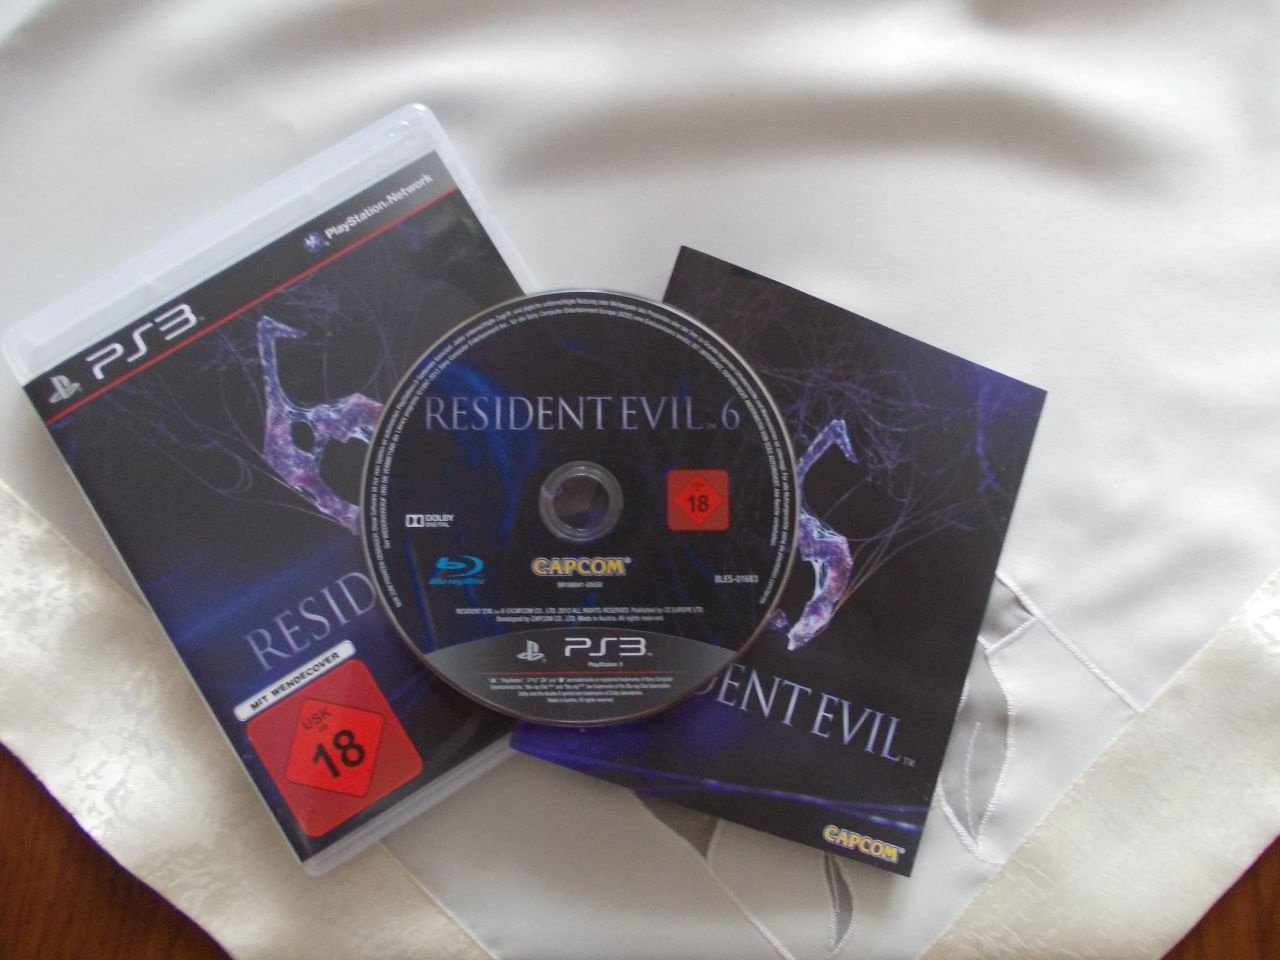 خرده فروشی لهستانی بازی Resident Evil 6 را به فروش رساند +عکس - گیمفا